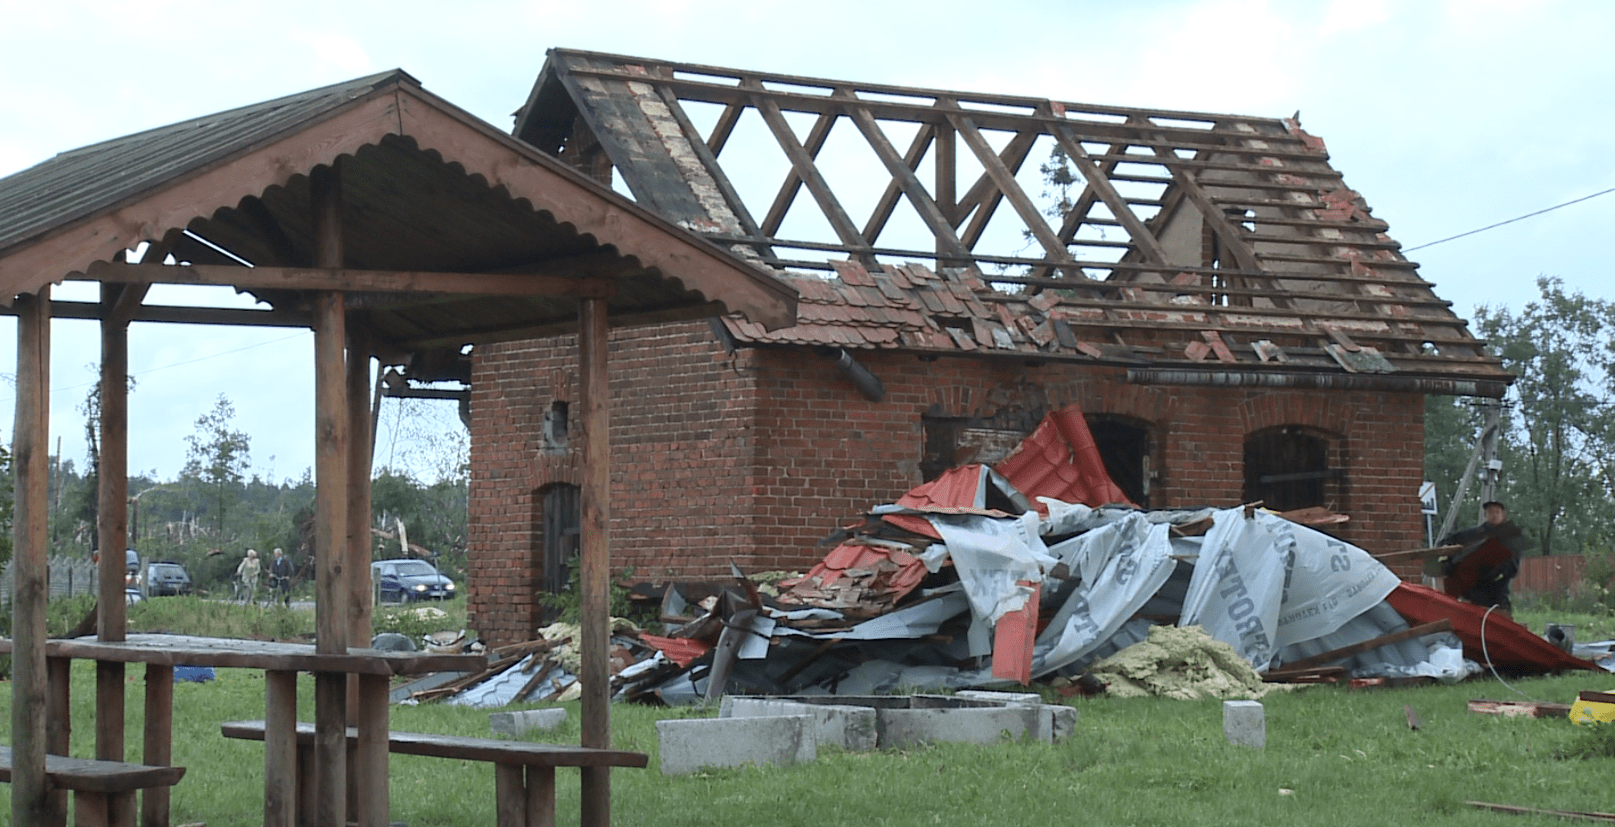 zniszczony przez tornado budynek